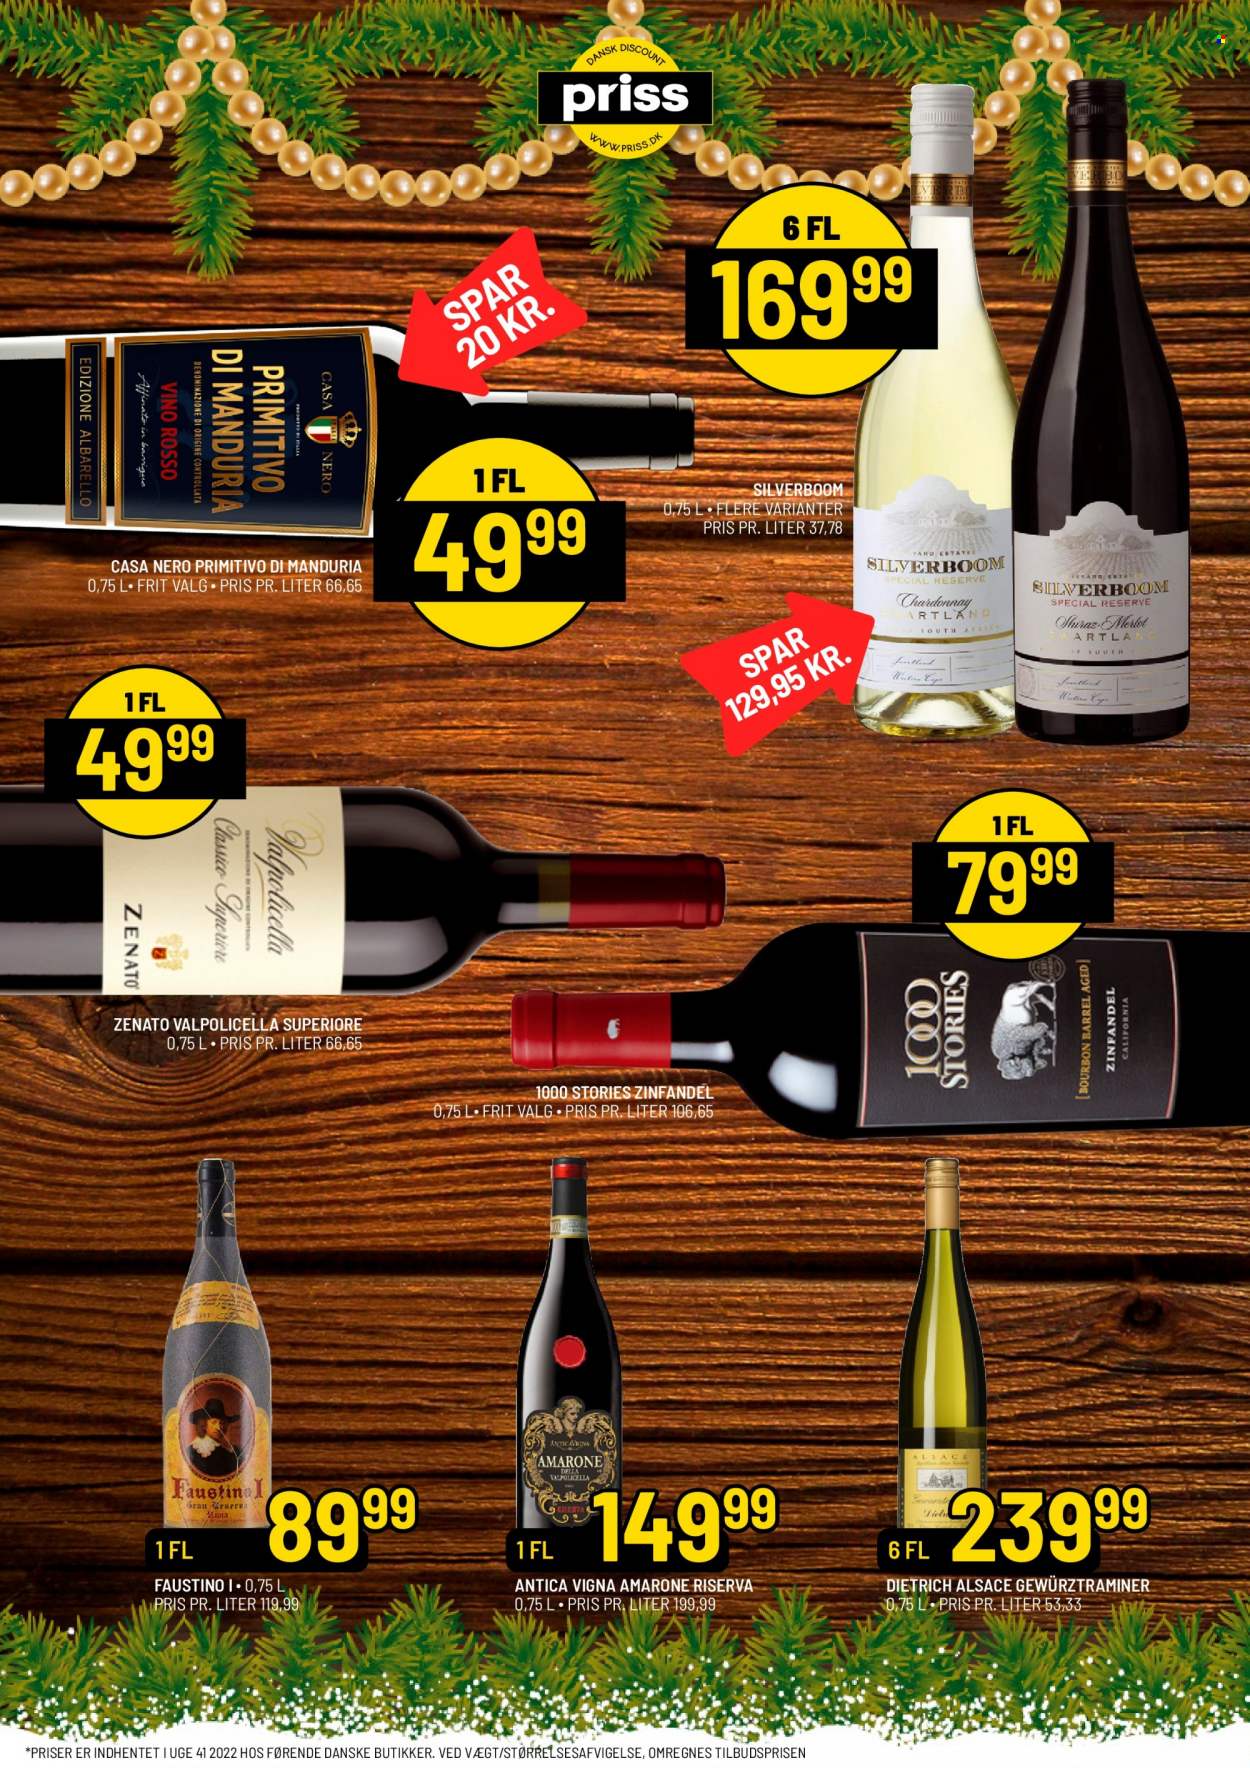 thumbnail - Priss tilbud  - 3.11.2022 - 30.11.2022 - tilbudsprodukter - Chardonnay, Merlot, Valpolicella, vin, Zinfandel, Shiraz. Side 12.